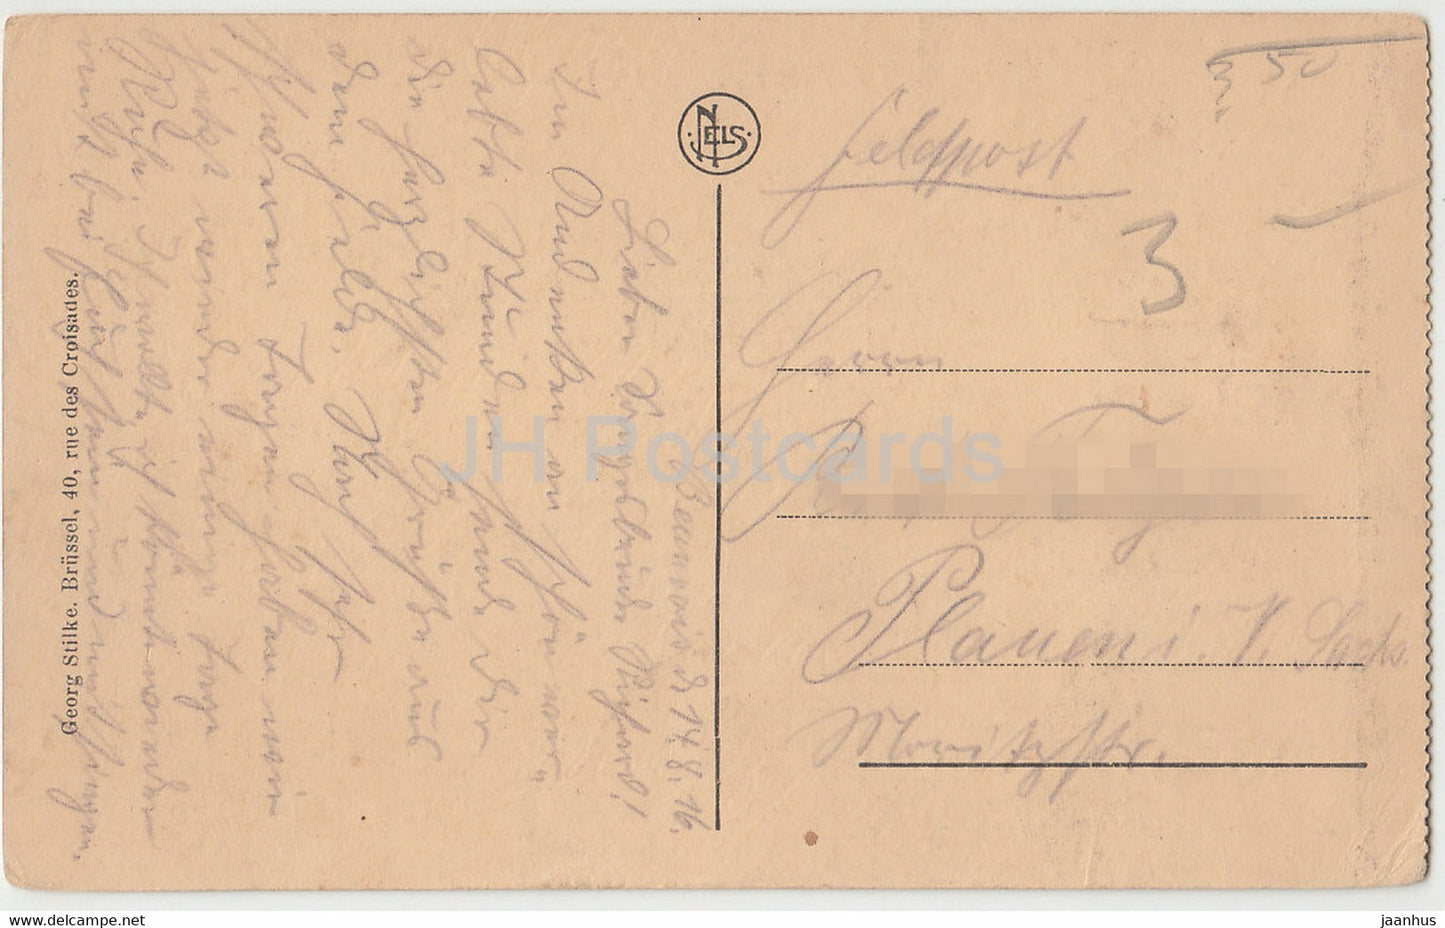 Saint Quentin - Justizpalast - Feldpost - alte Postkarte - 1916 - Frankreich - gebraucht